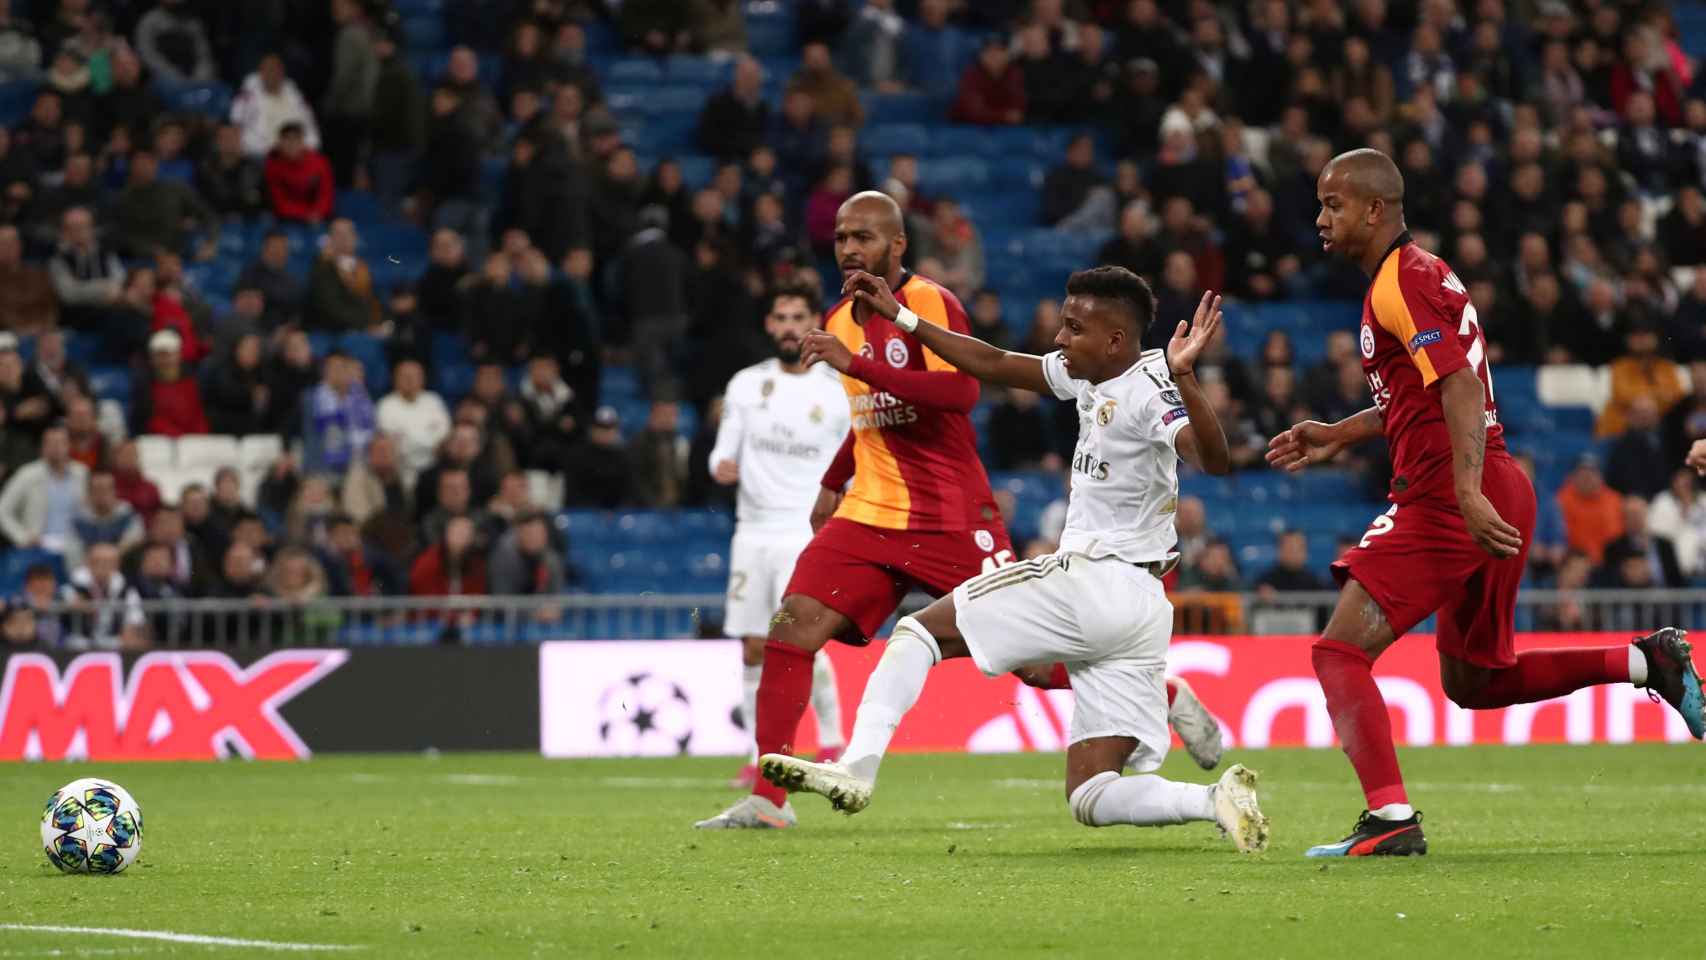 Rodrygo Goes completa su gran noche con su tercer gol al Galatasaray